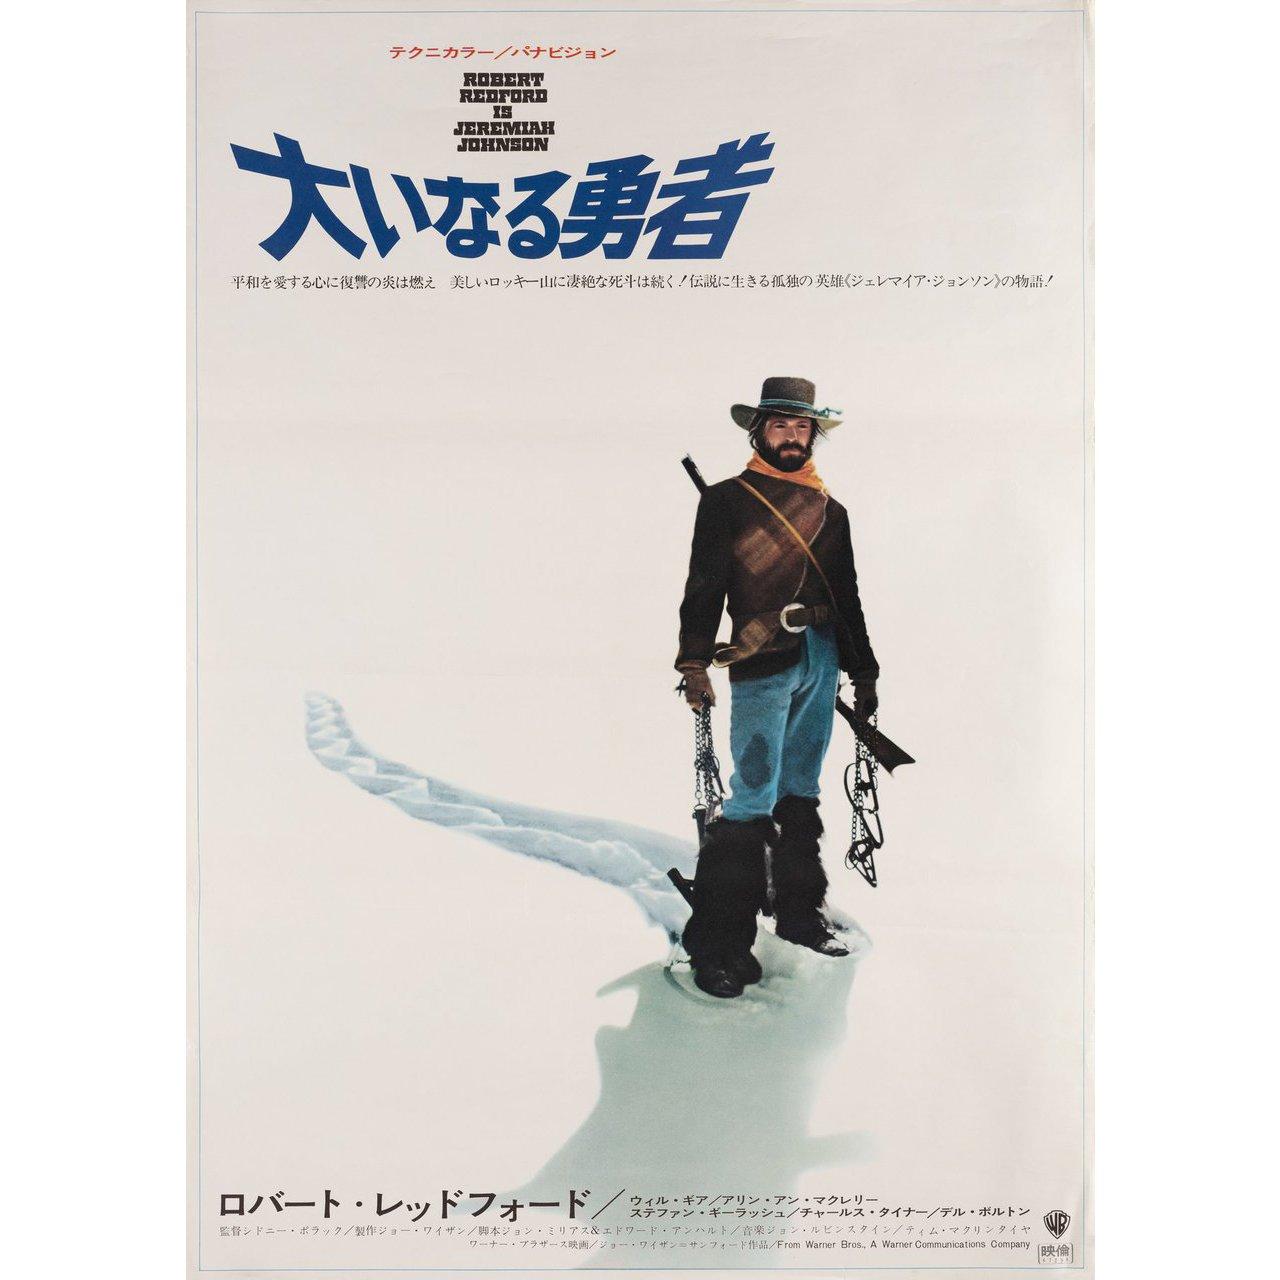 Originales japanisches B2-Plakat von 1972 für den Film Jeremiah Johnson unter der Regie von Sydney Pollack mit Robert Redford / Will Geer / Delle Bolton / Josh Albee. Sehr guter Zustand, gefaltet. Viele Originalplakate wurden gefaltet herausgegeben